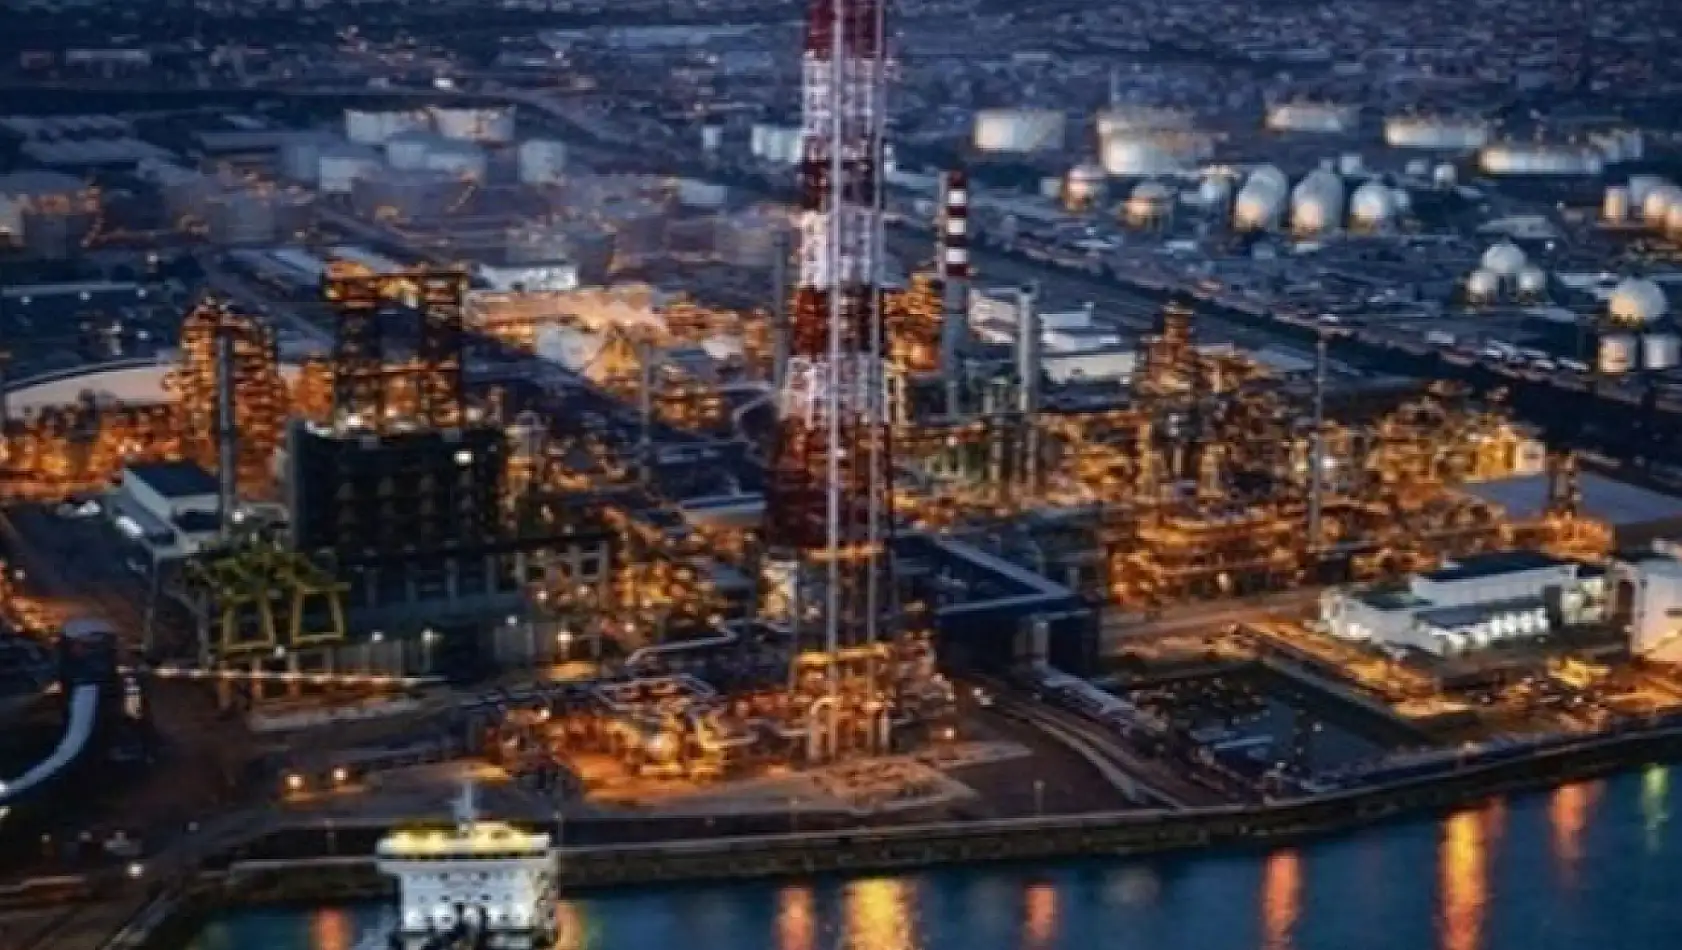 Tüpraş, Irak'tan alınan 1 milyon varil petrolün Eylül'de teslim edileceğini açıkladı